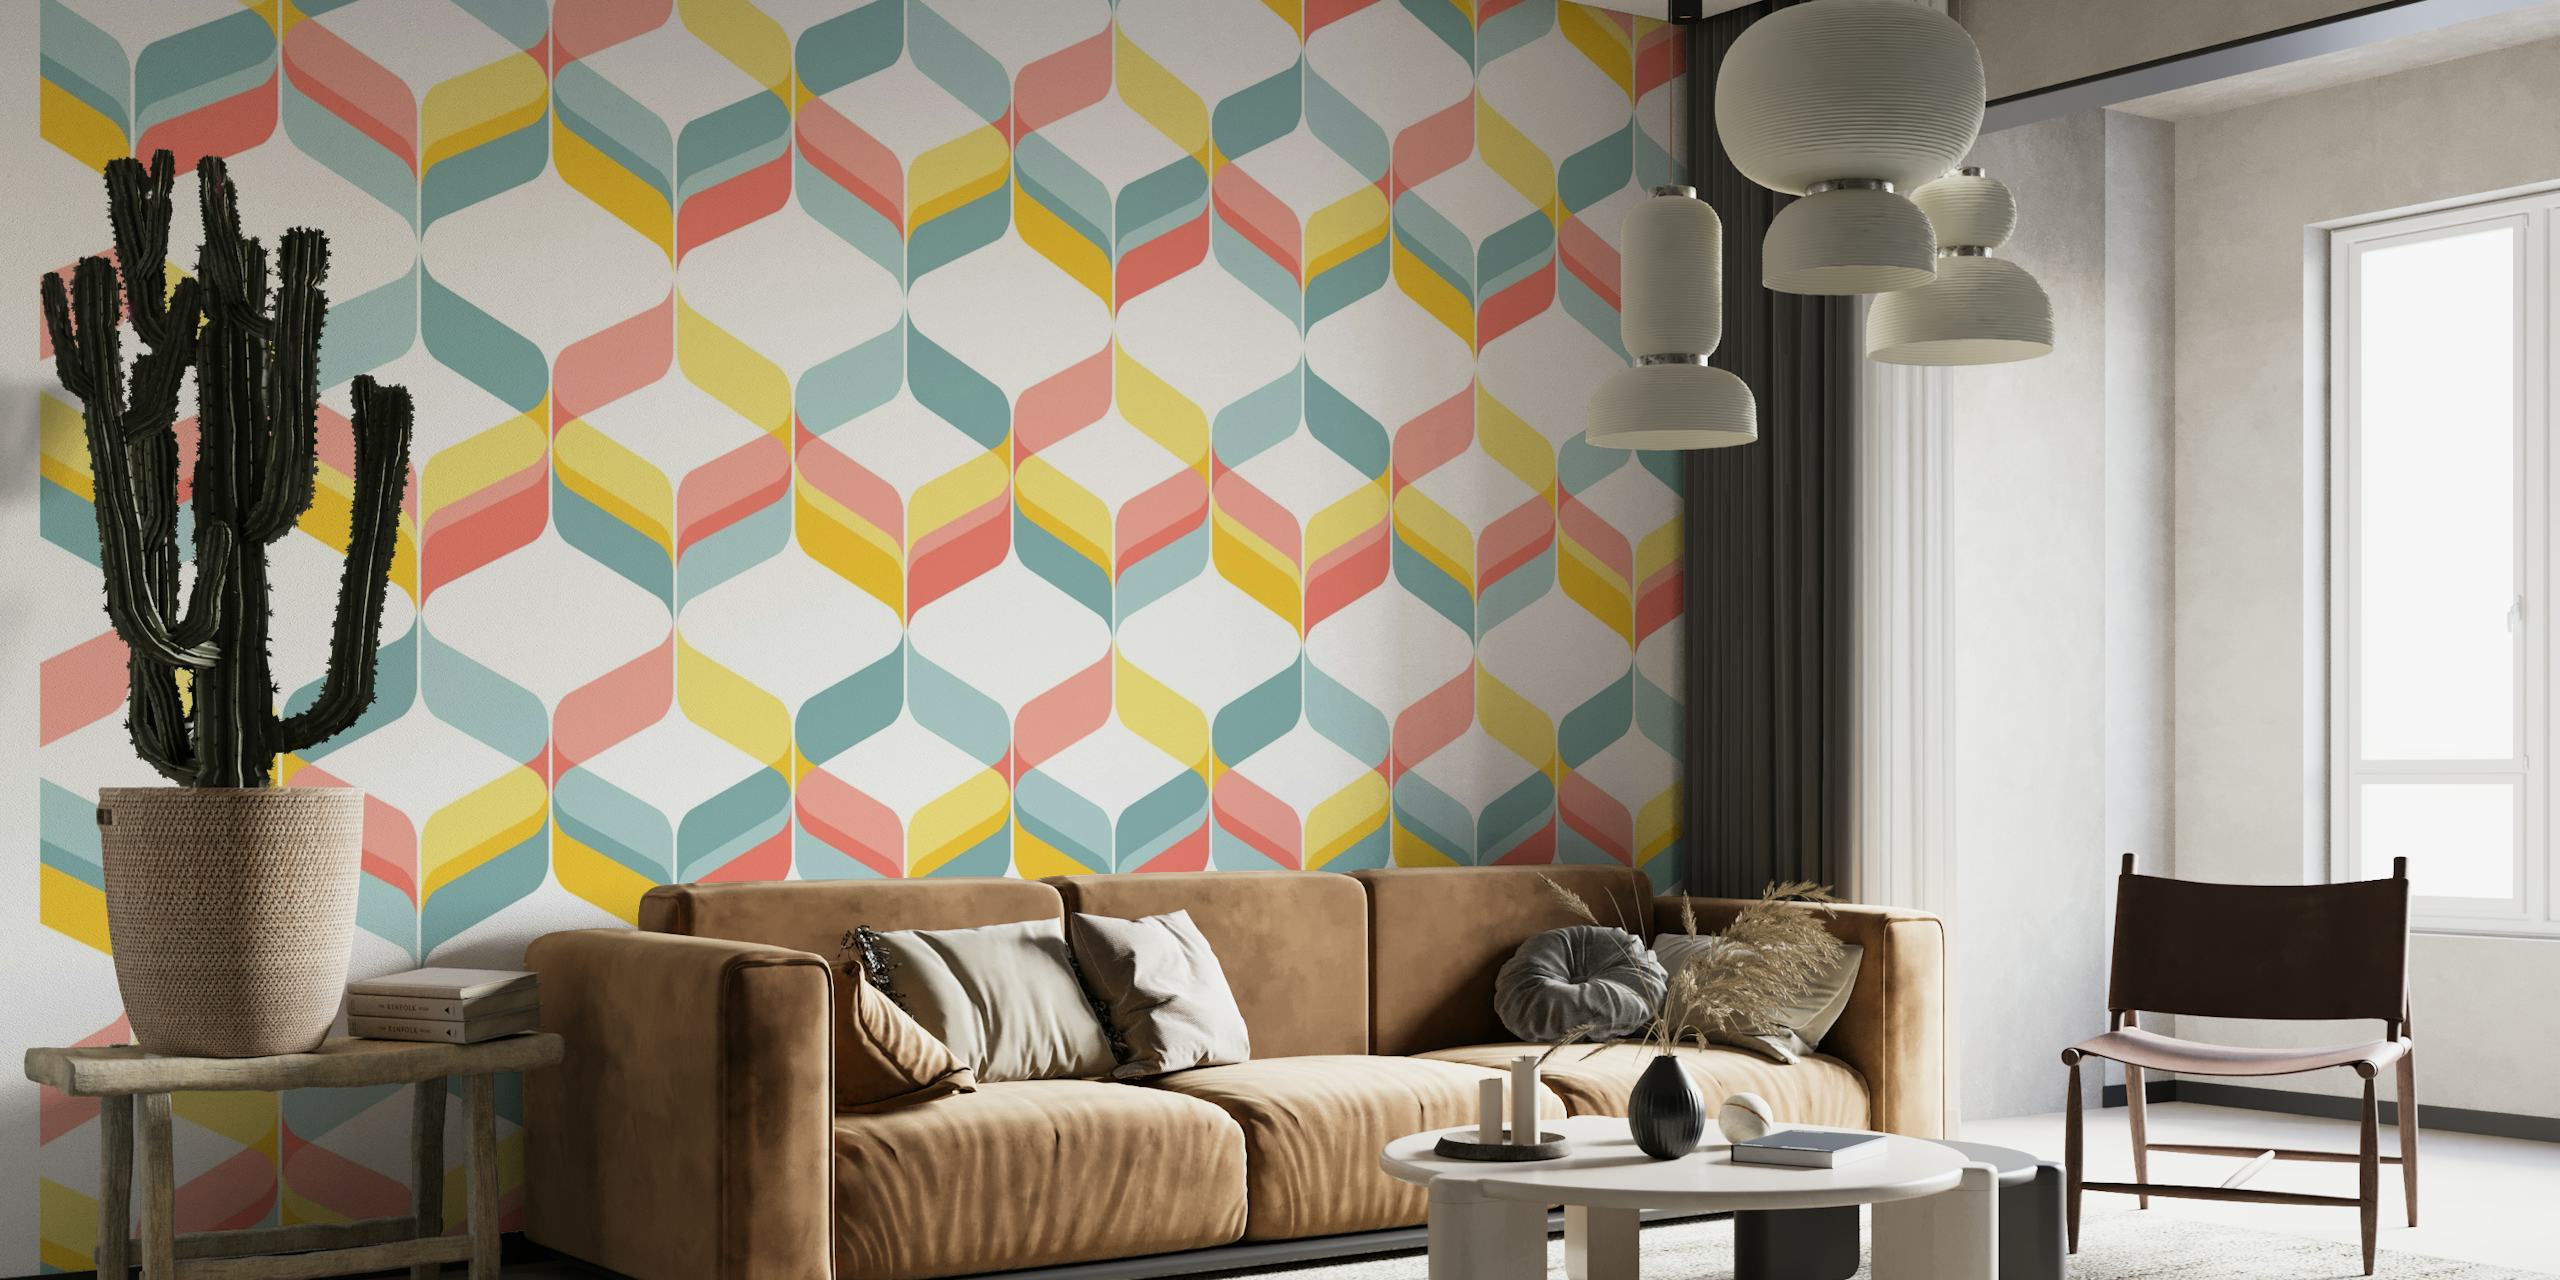 Mural de parede de fitas geométricas pastel em um design retro mod